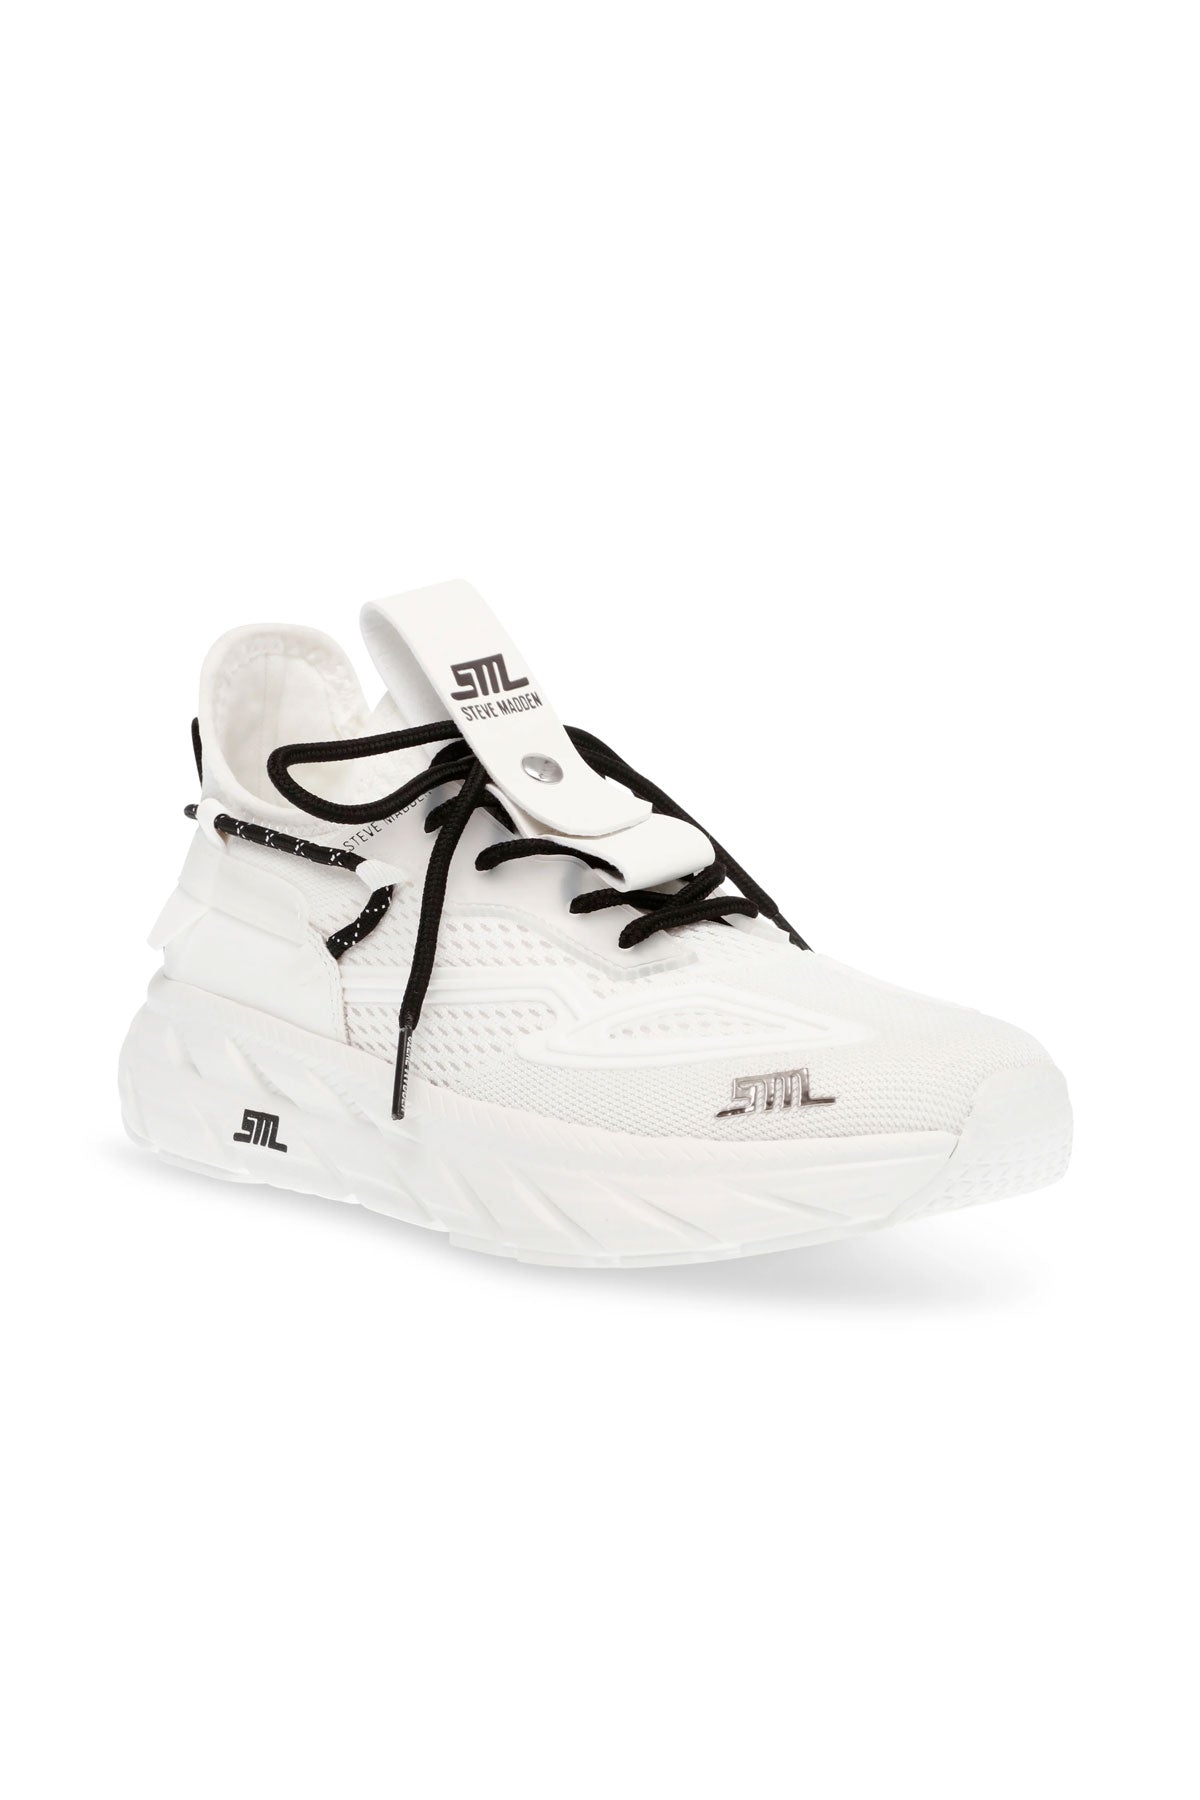 סטיב מאדן נעלי ספורט Propel בצבע לבן לנשים-Steve Madden-36-נאקו